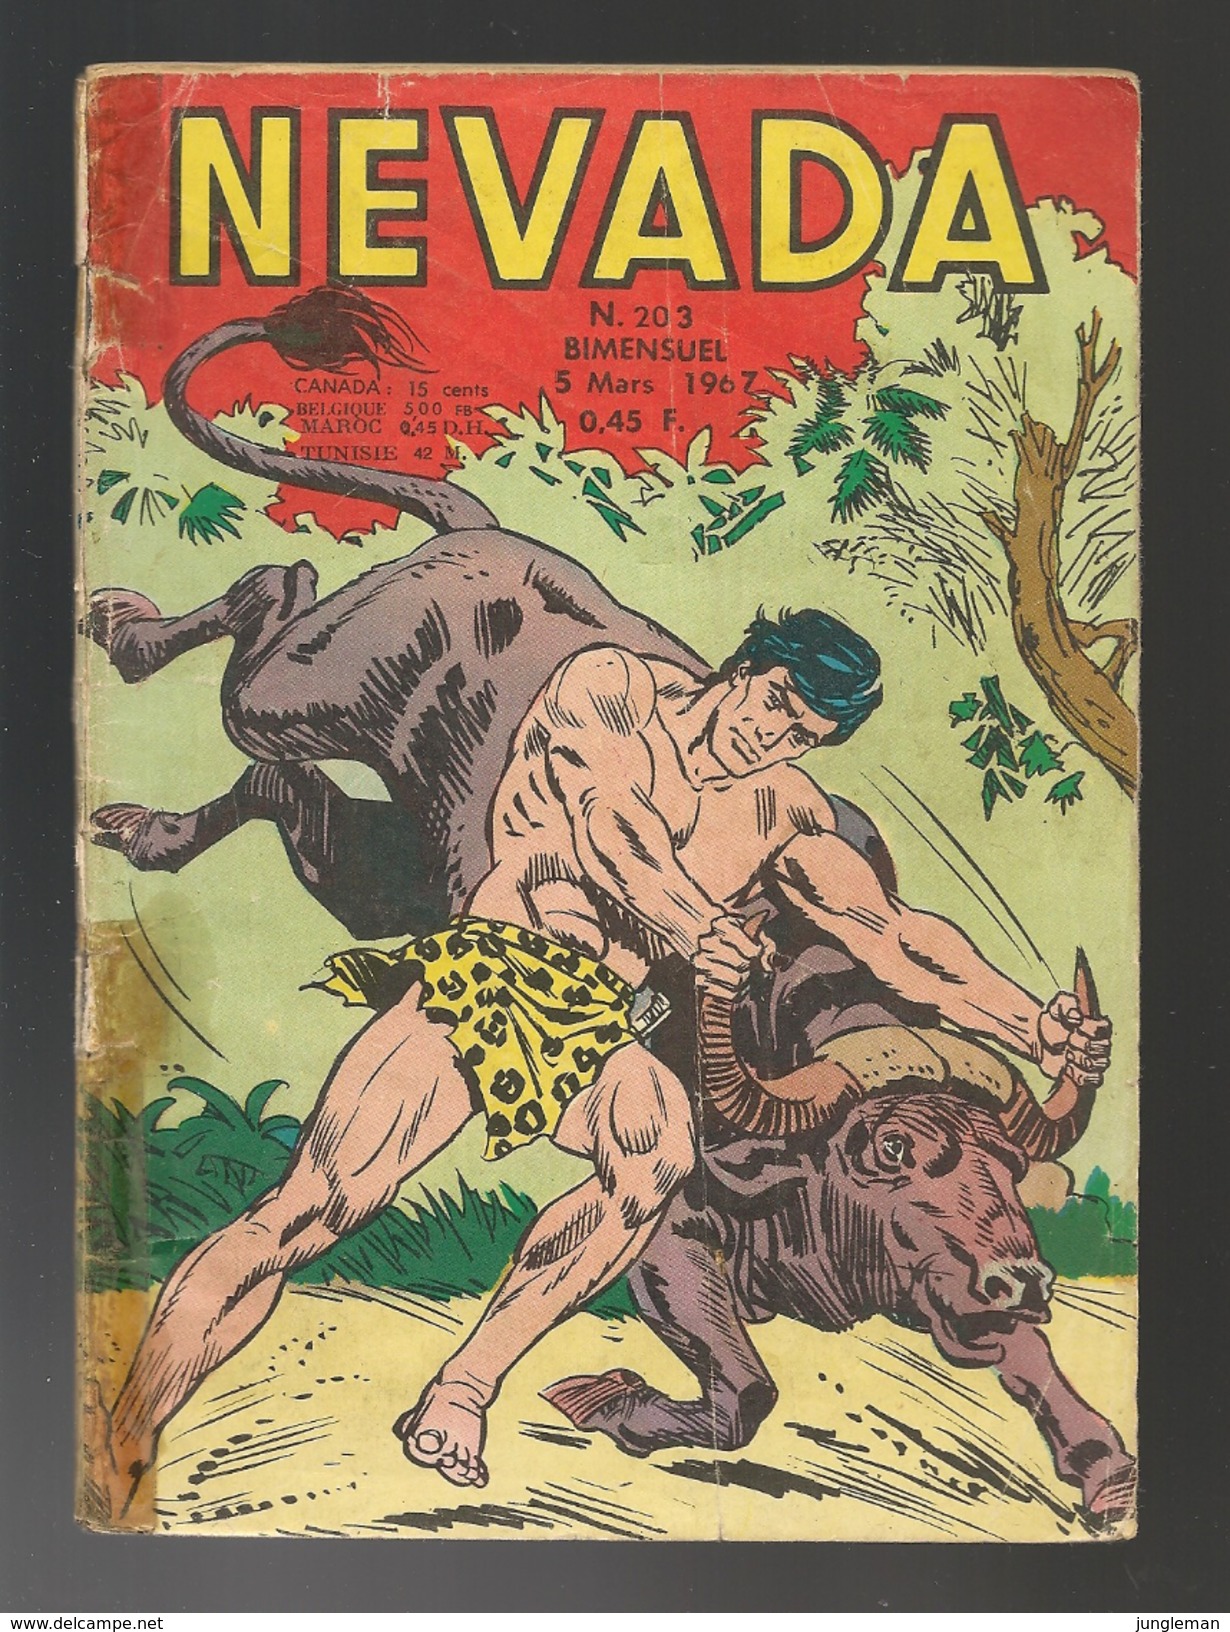 Nevada N° 203 - Editions LUG à Lyon - Mars 1967 - Avec Miki Le Ranger Et Tamar Le Roi De La Jungle - BE - Nevada